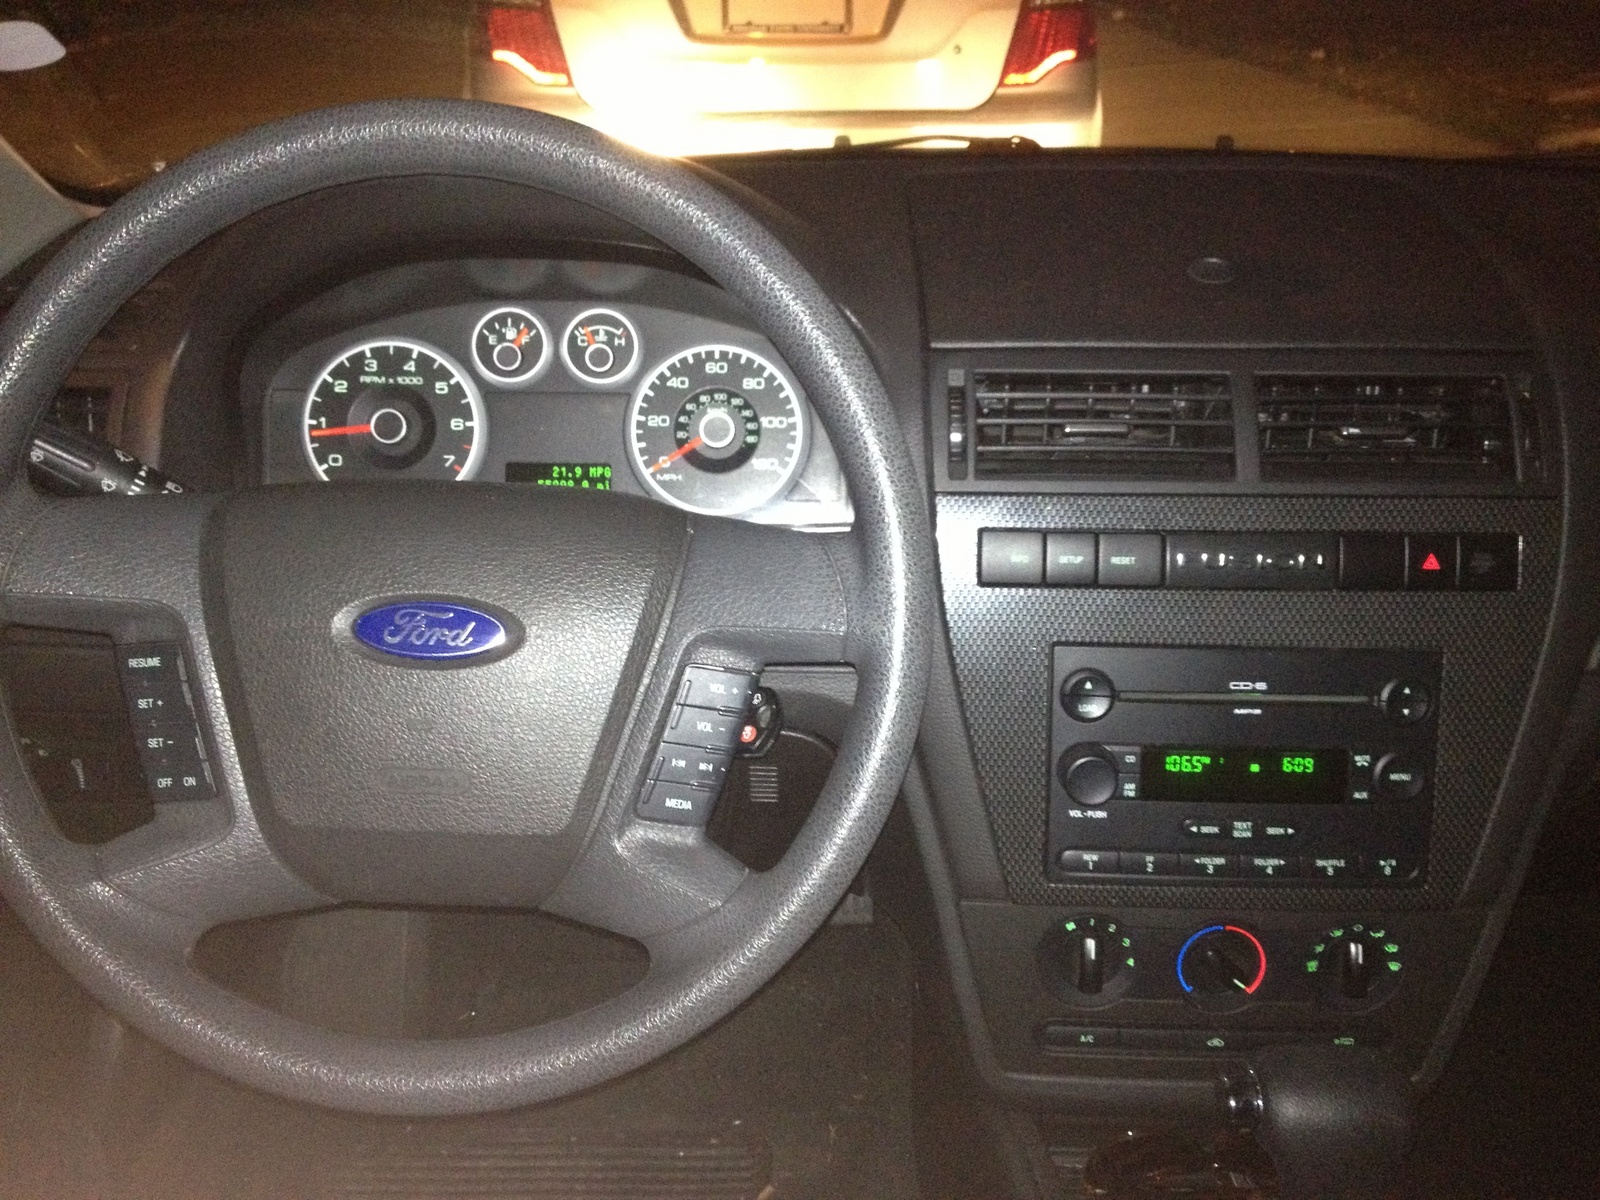 2007 Ford fusion interior accessories #4